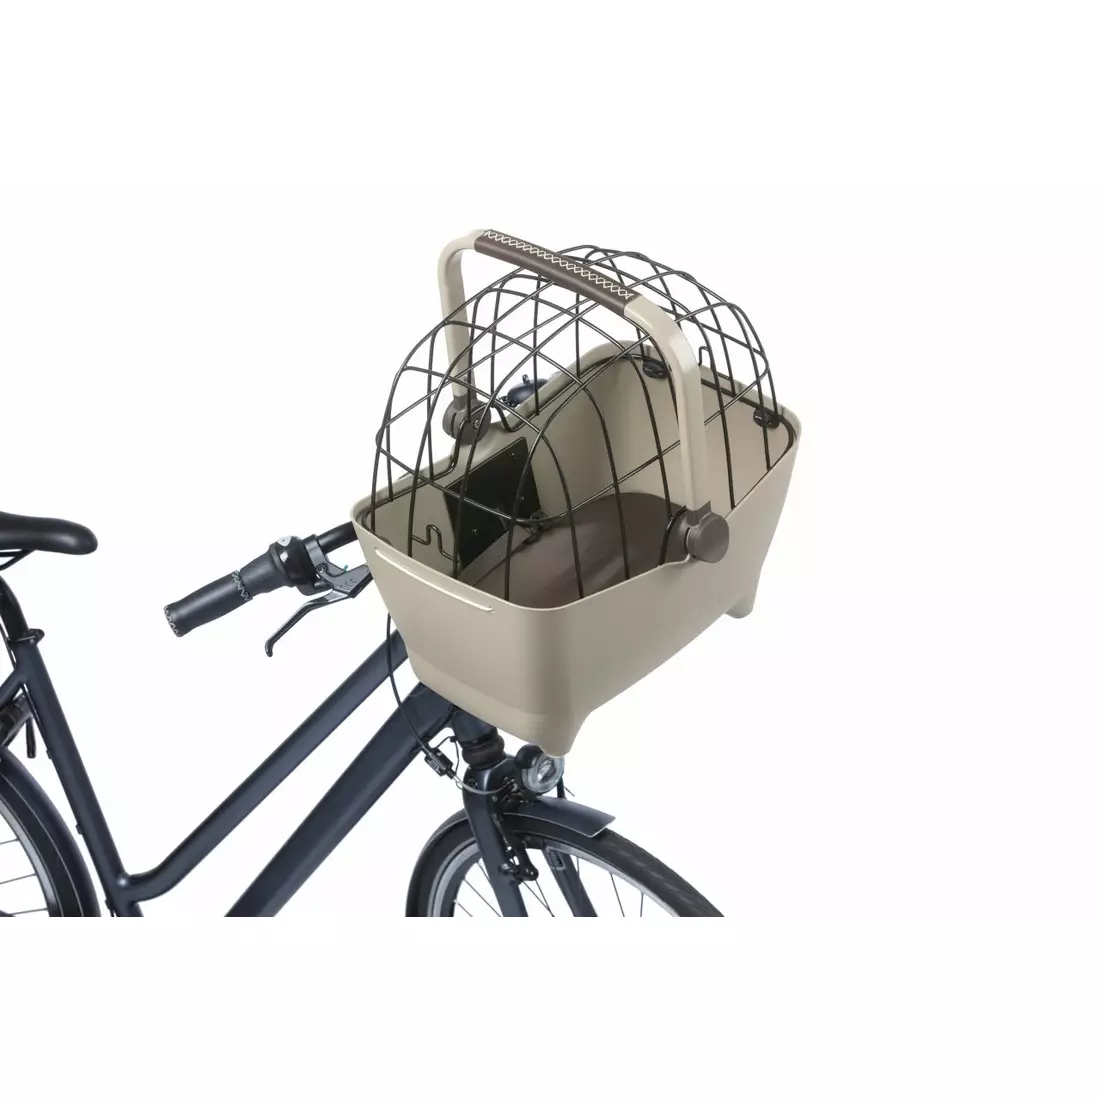 BASIL BUDDY KF Fahrrad-Vorderkorb für einen Hund mit Kissen, braun